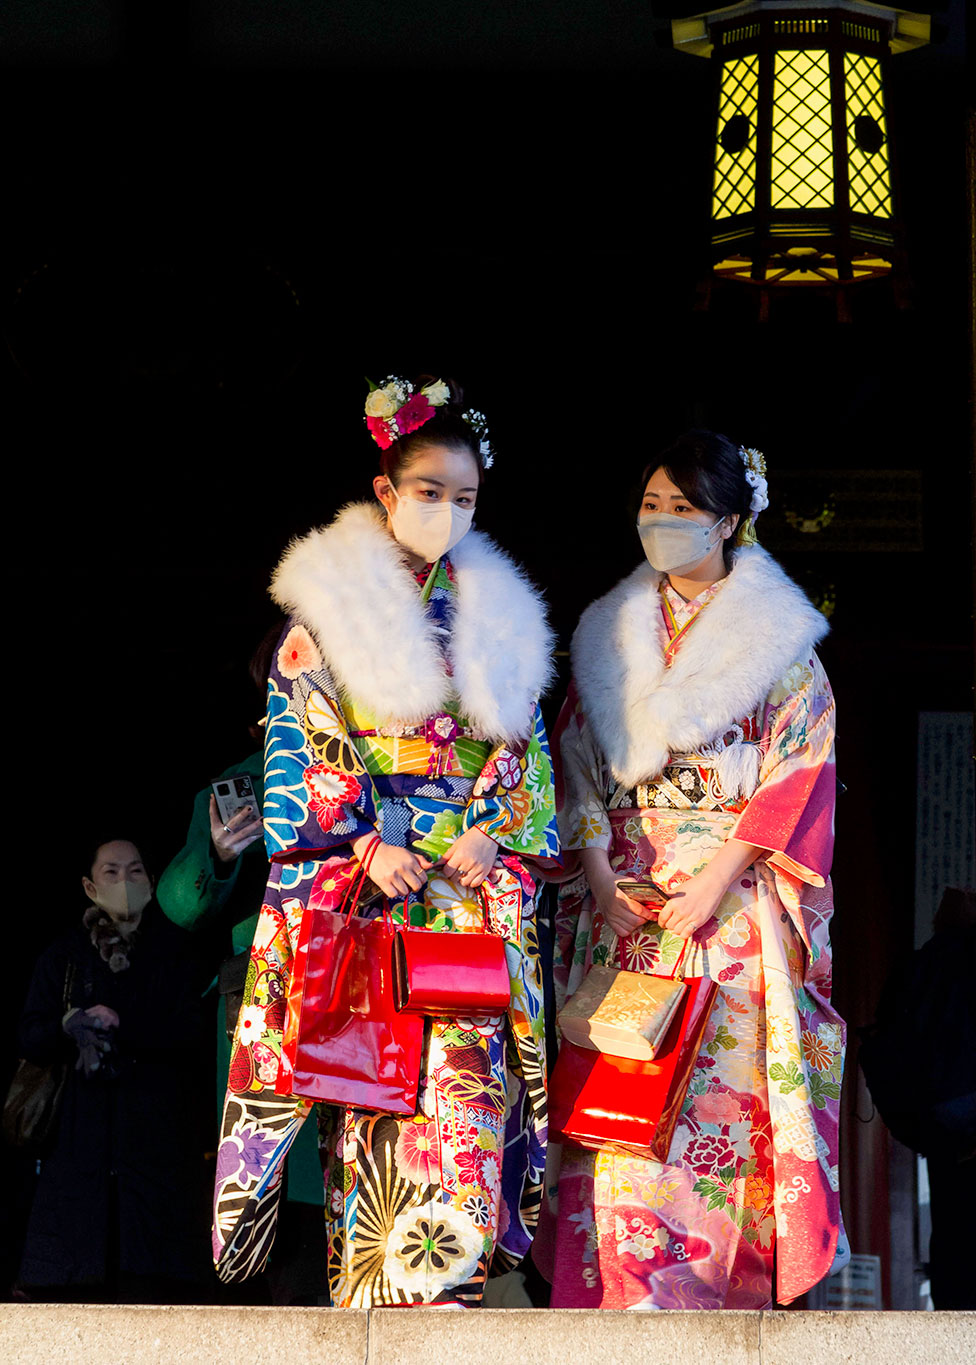 امرأتان أثناء زيارة لمعبد "سنسو جي" في العاصمة اليابانية طوكيو. في عيد البلوغ يجري الاحتفاء بمن يصلون سن البلوغ القانوني بشعائر خاصة.